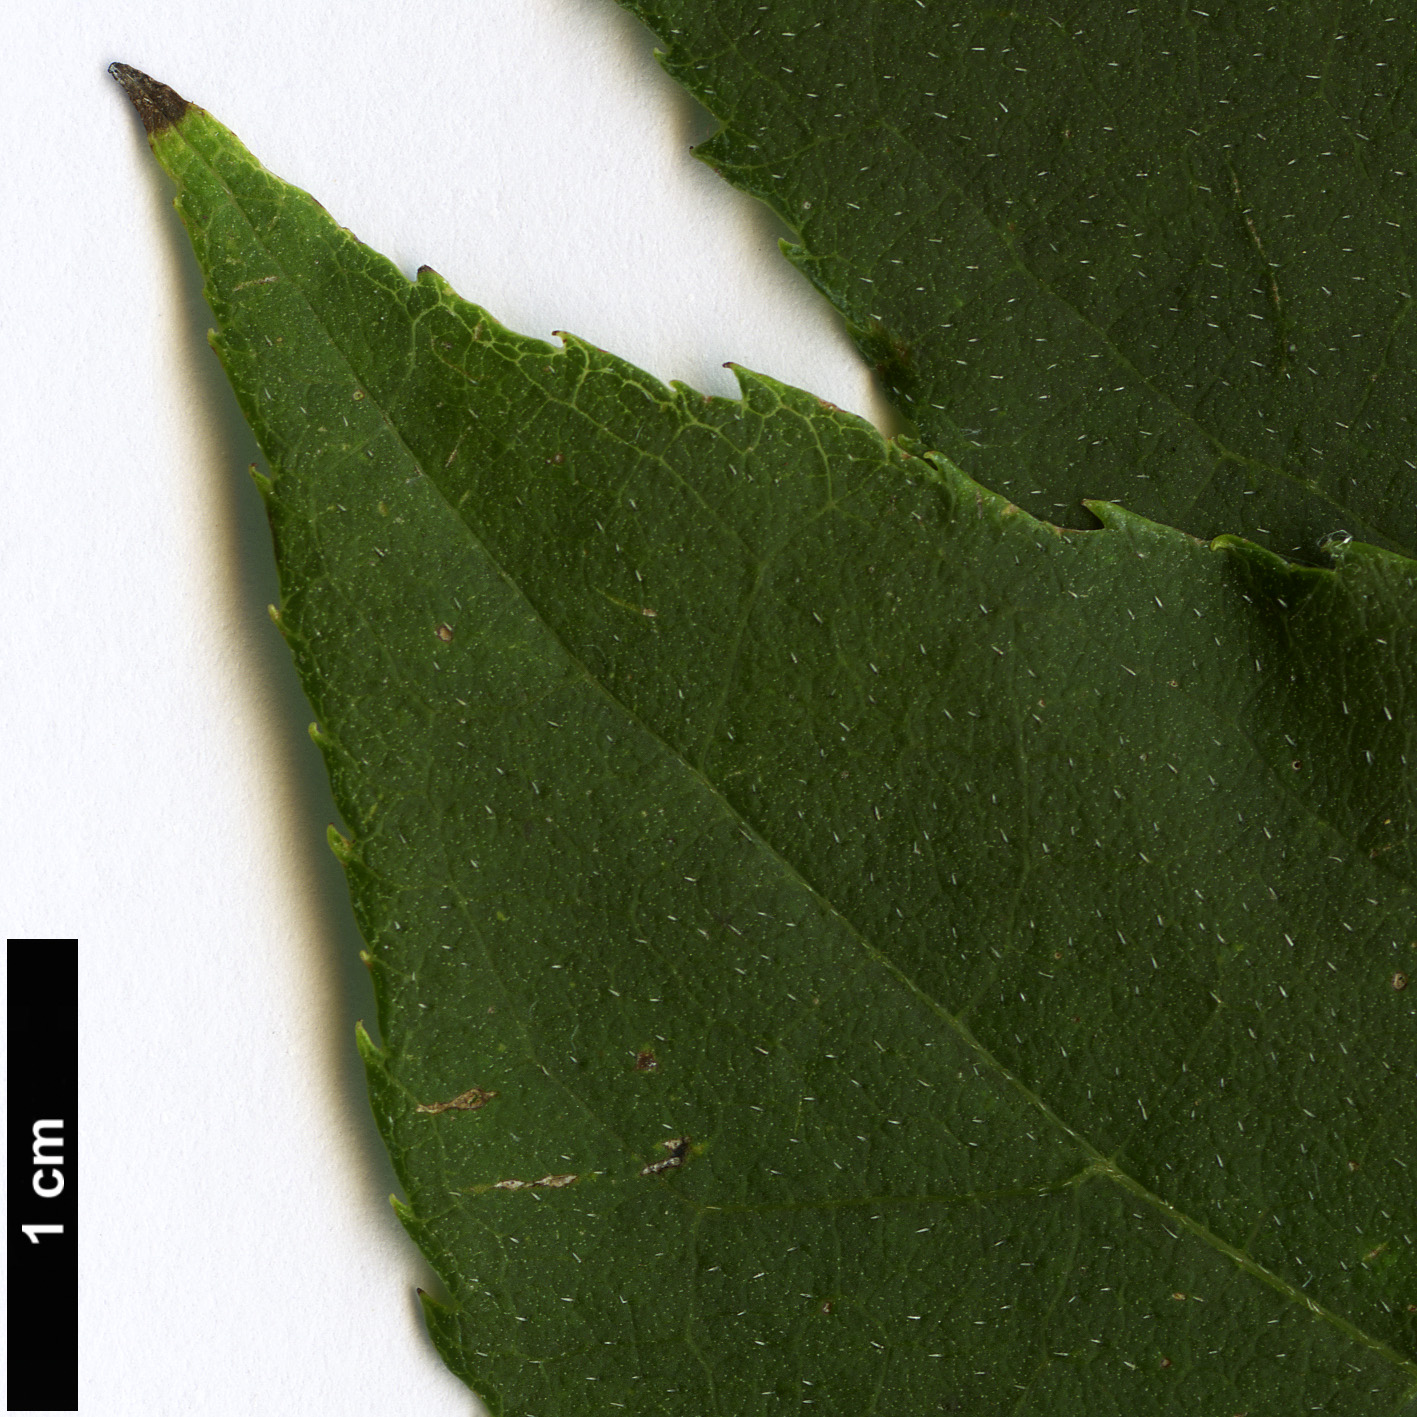 High resolution image: Family: Boraginaceae - Genus: Ehretia - Taxon: acuminata